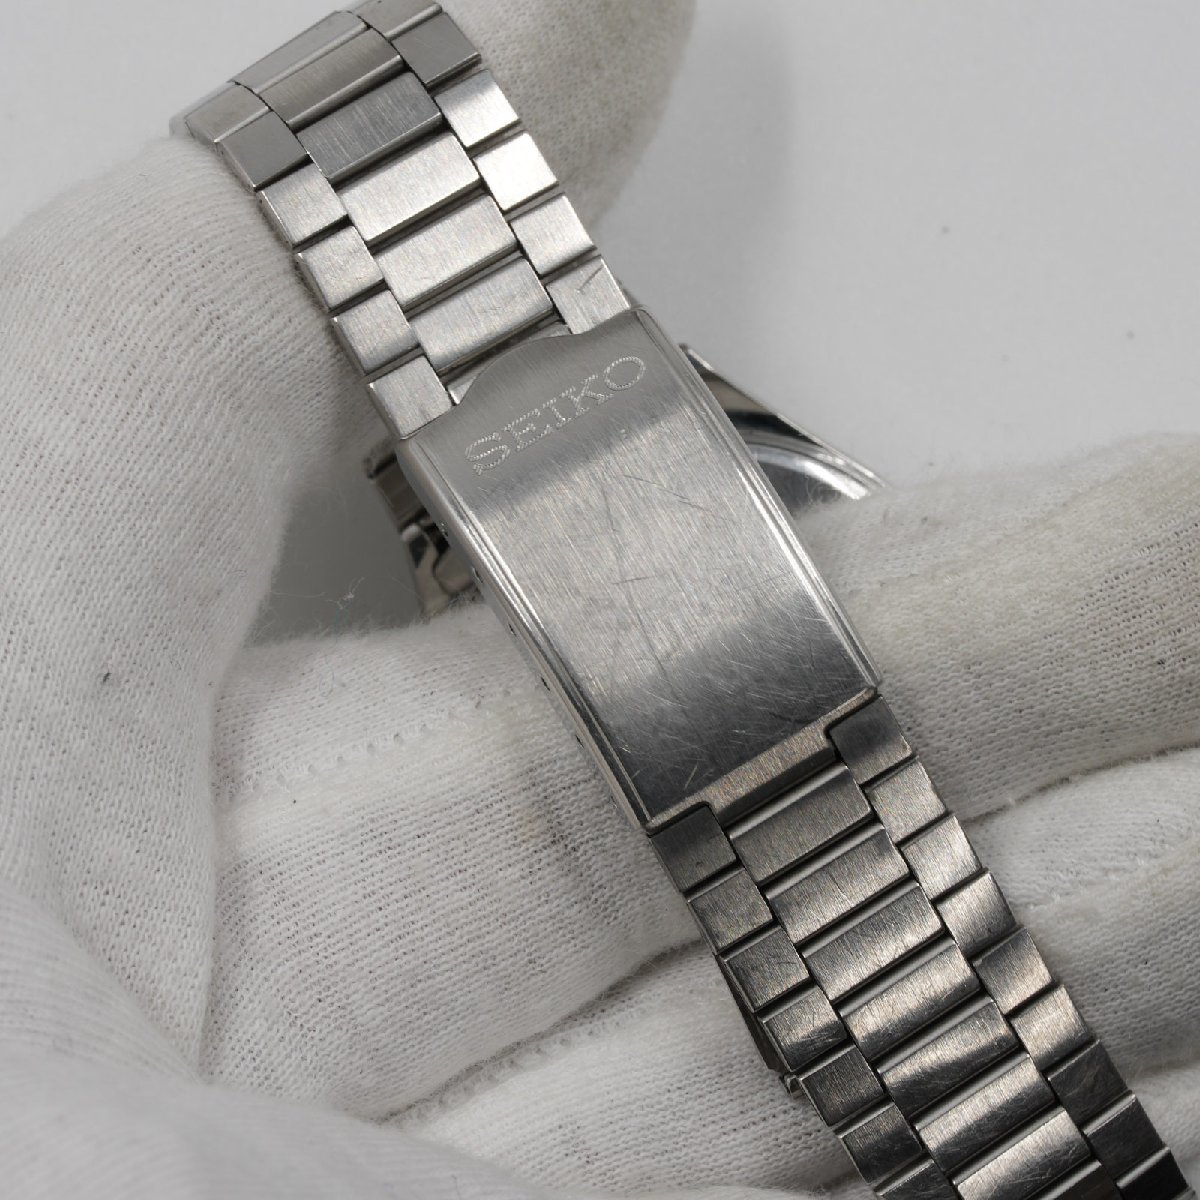 セイコー SEIKO 腕時計 スプリット 7N48-7A00 シルバー・ホワイト文字盤 スピリット クオーツ メンズ 中古 動作品 [質イコー]_画像4